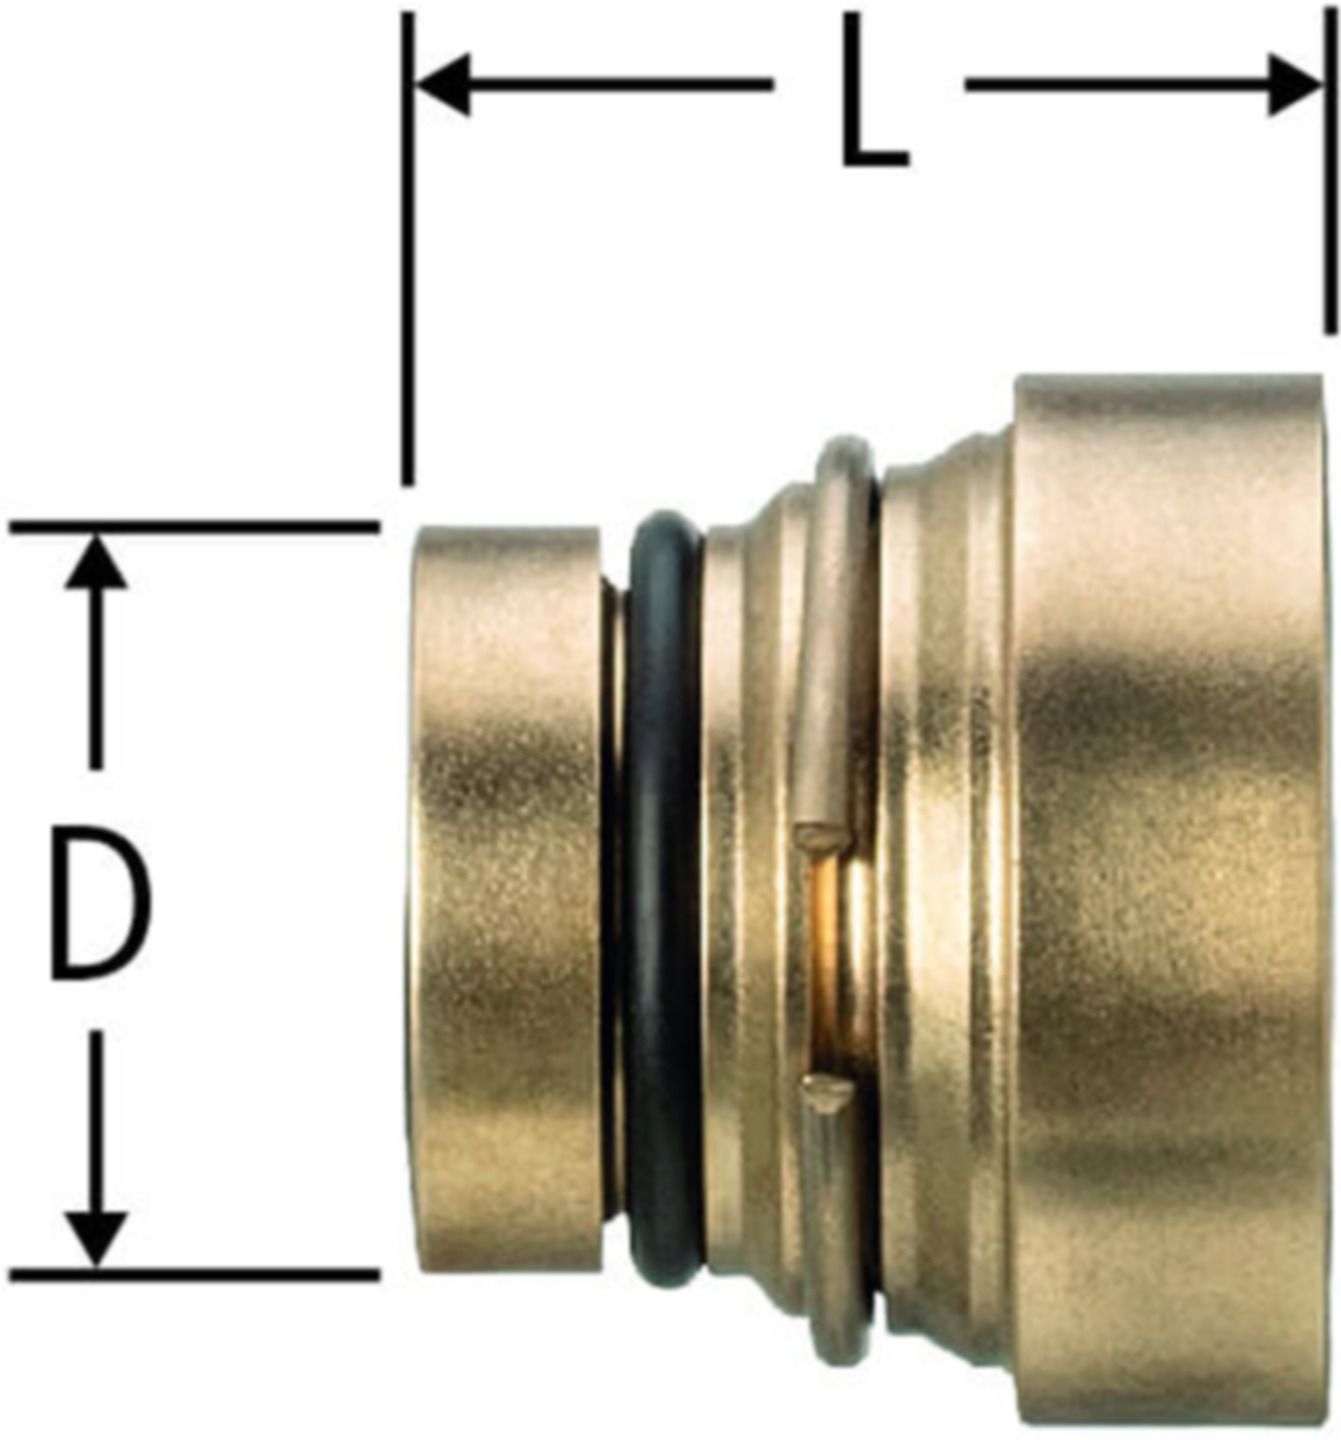 Verschlussstopfen steckbar 20mm zu Optiflex-Verteiler 86120.21 - Nussbaum Optiflex-Rohre und Formstücke